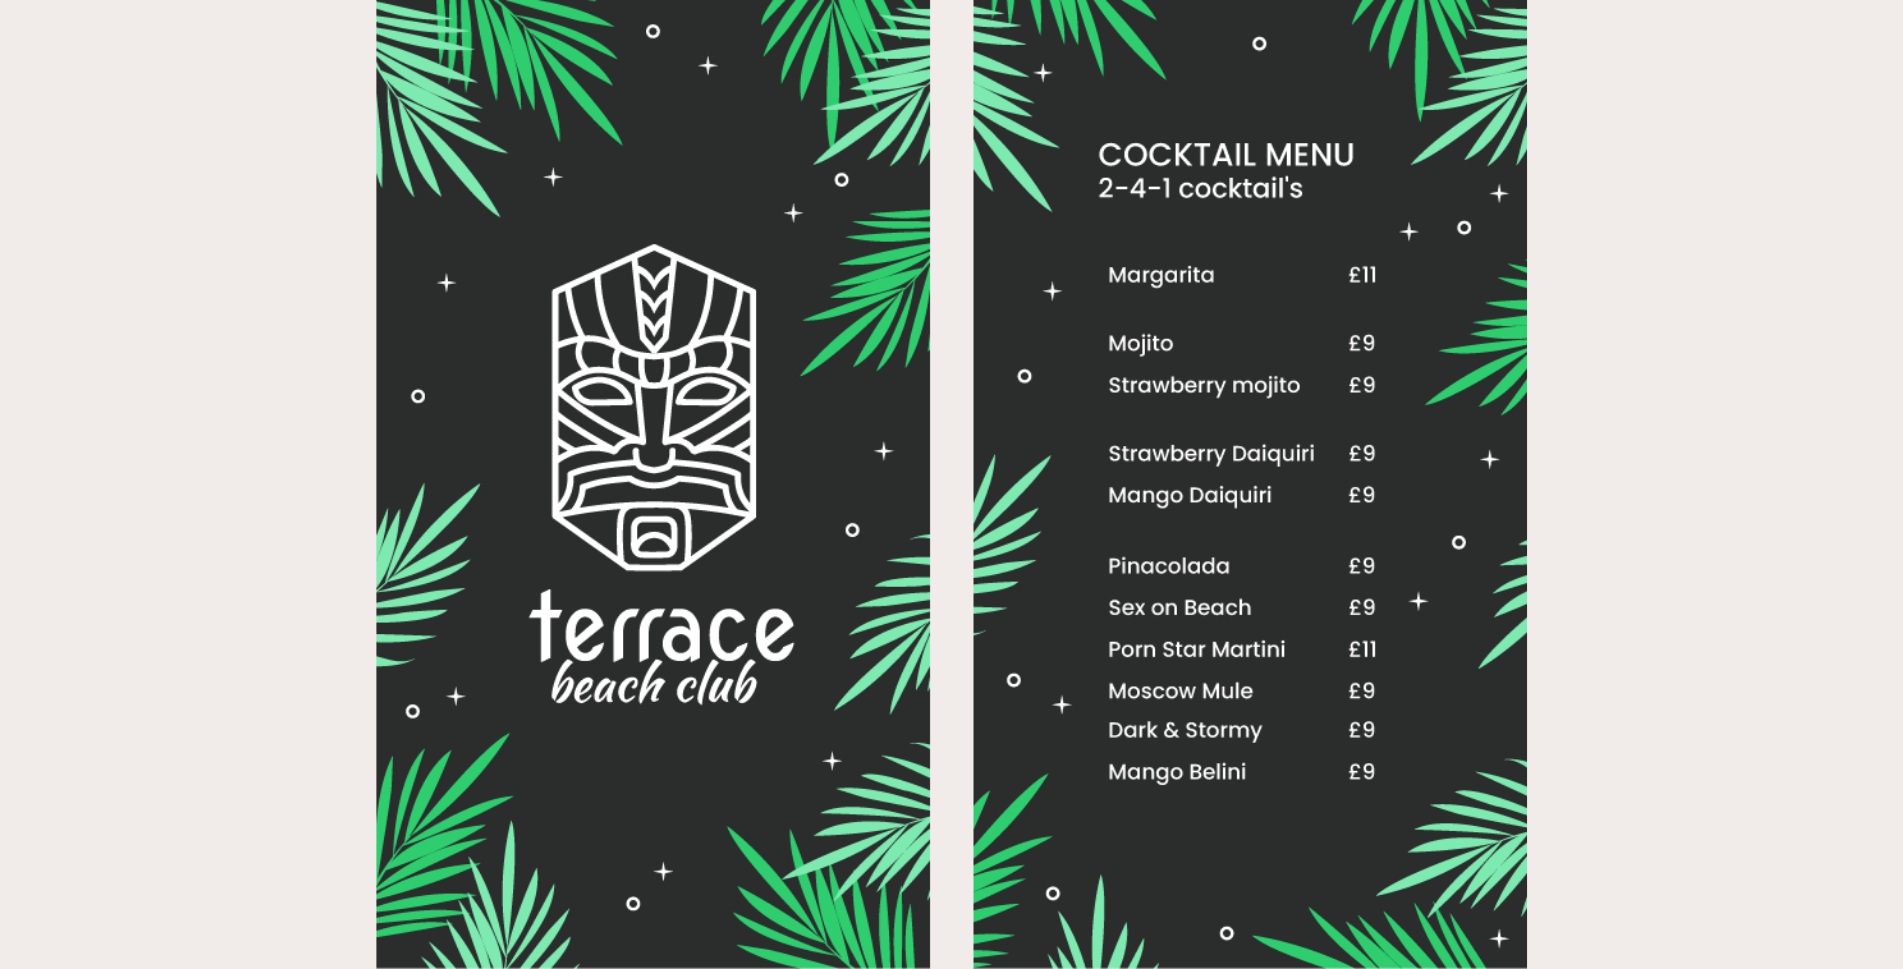 TerraceBeachClub.com - Menu #1